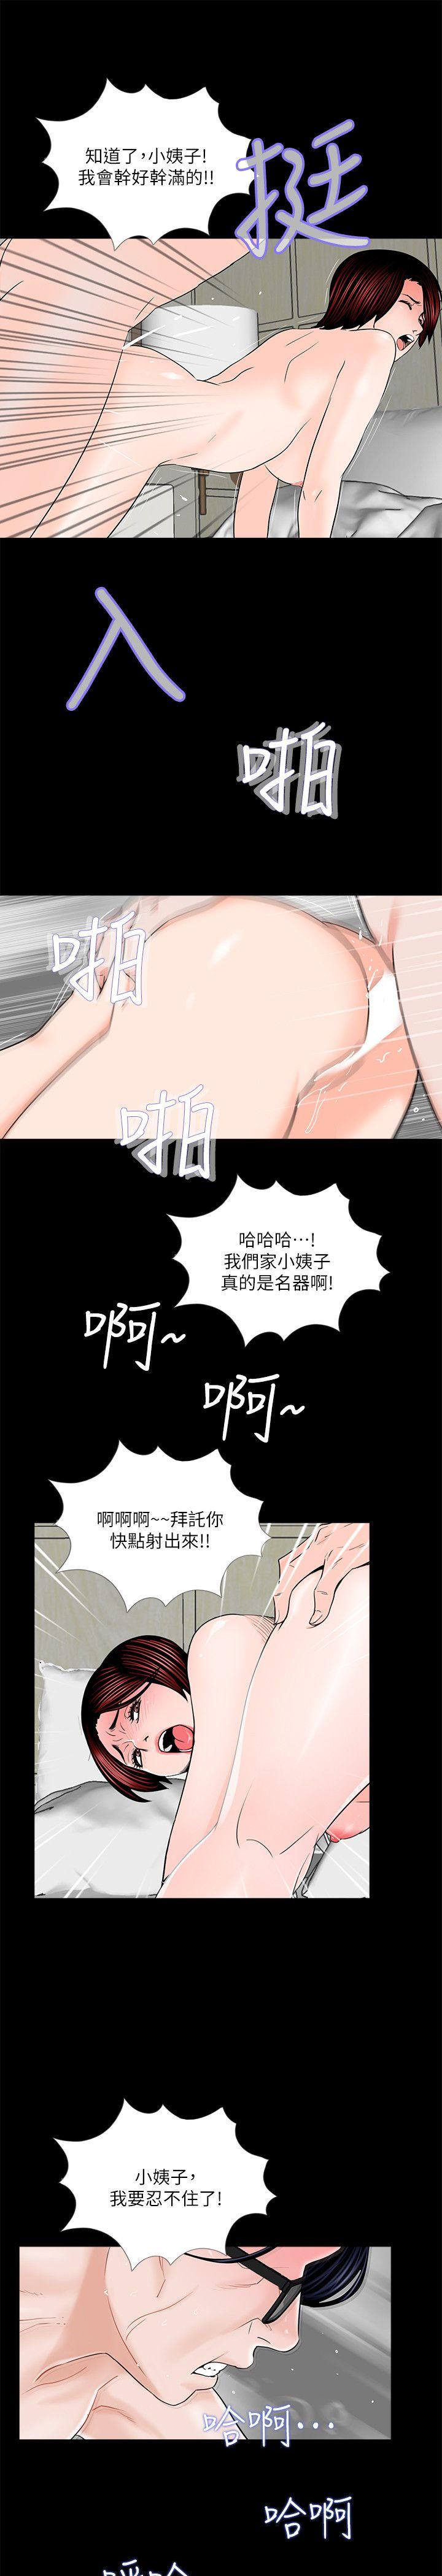 韩国污漫画 夢魘 第32话 24